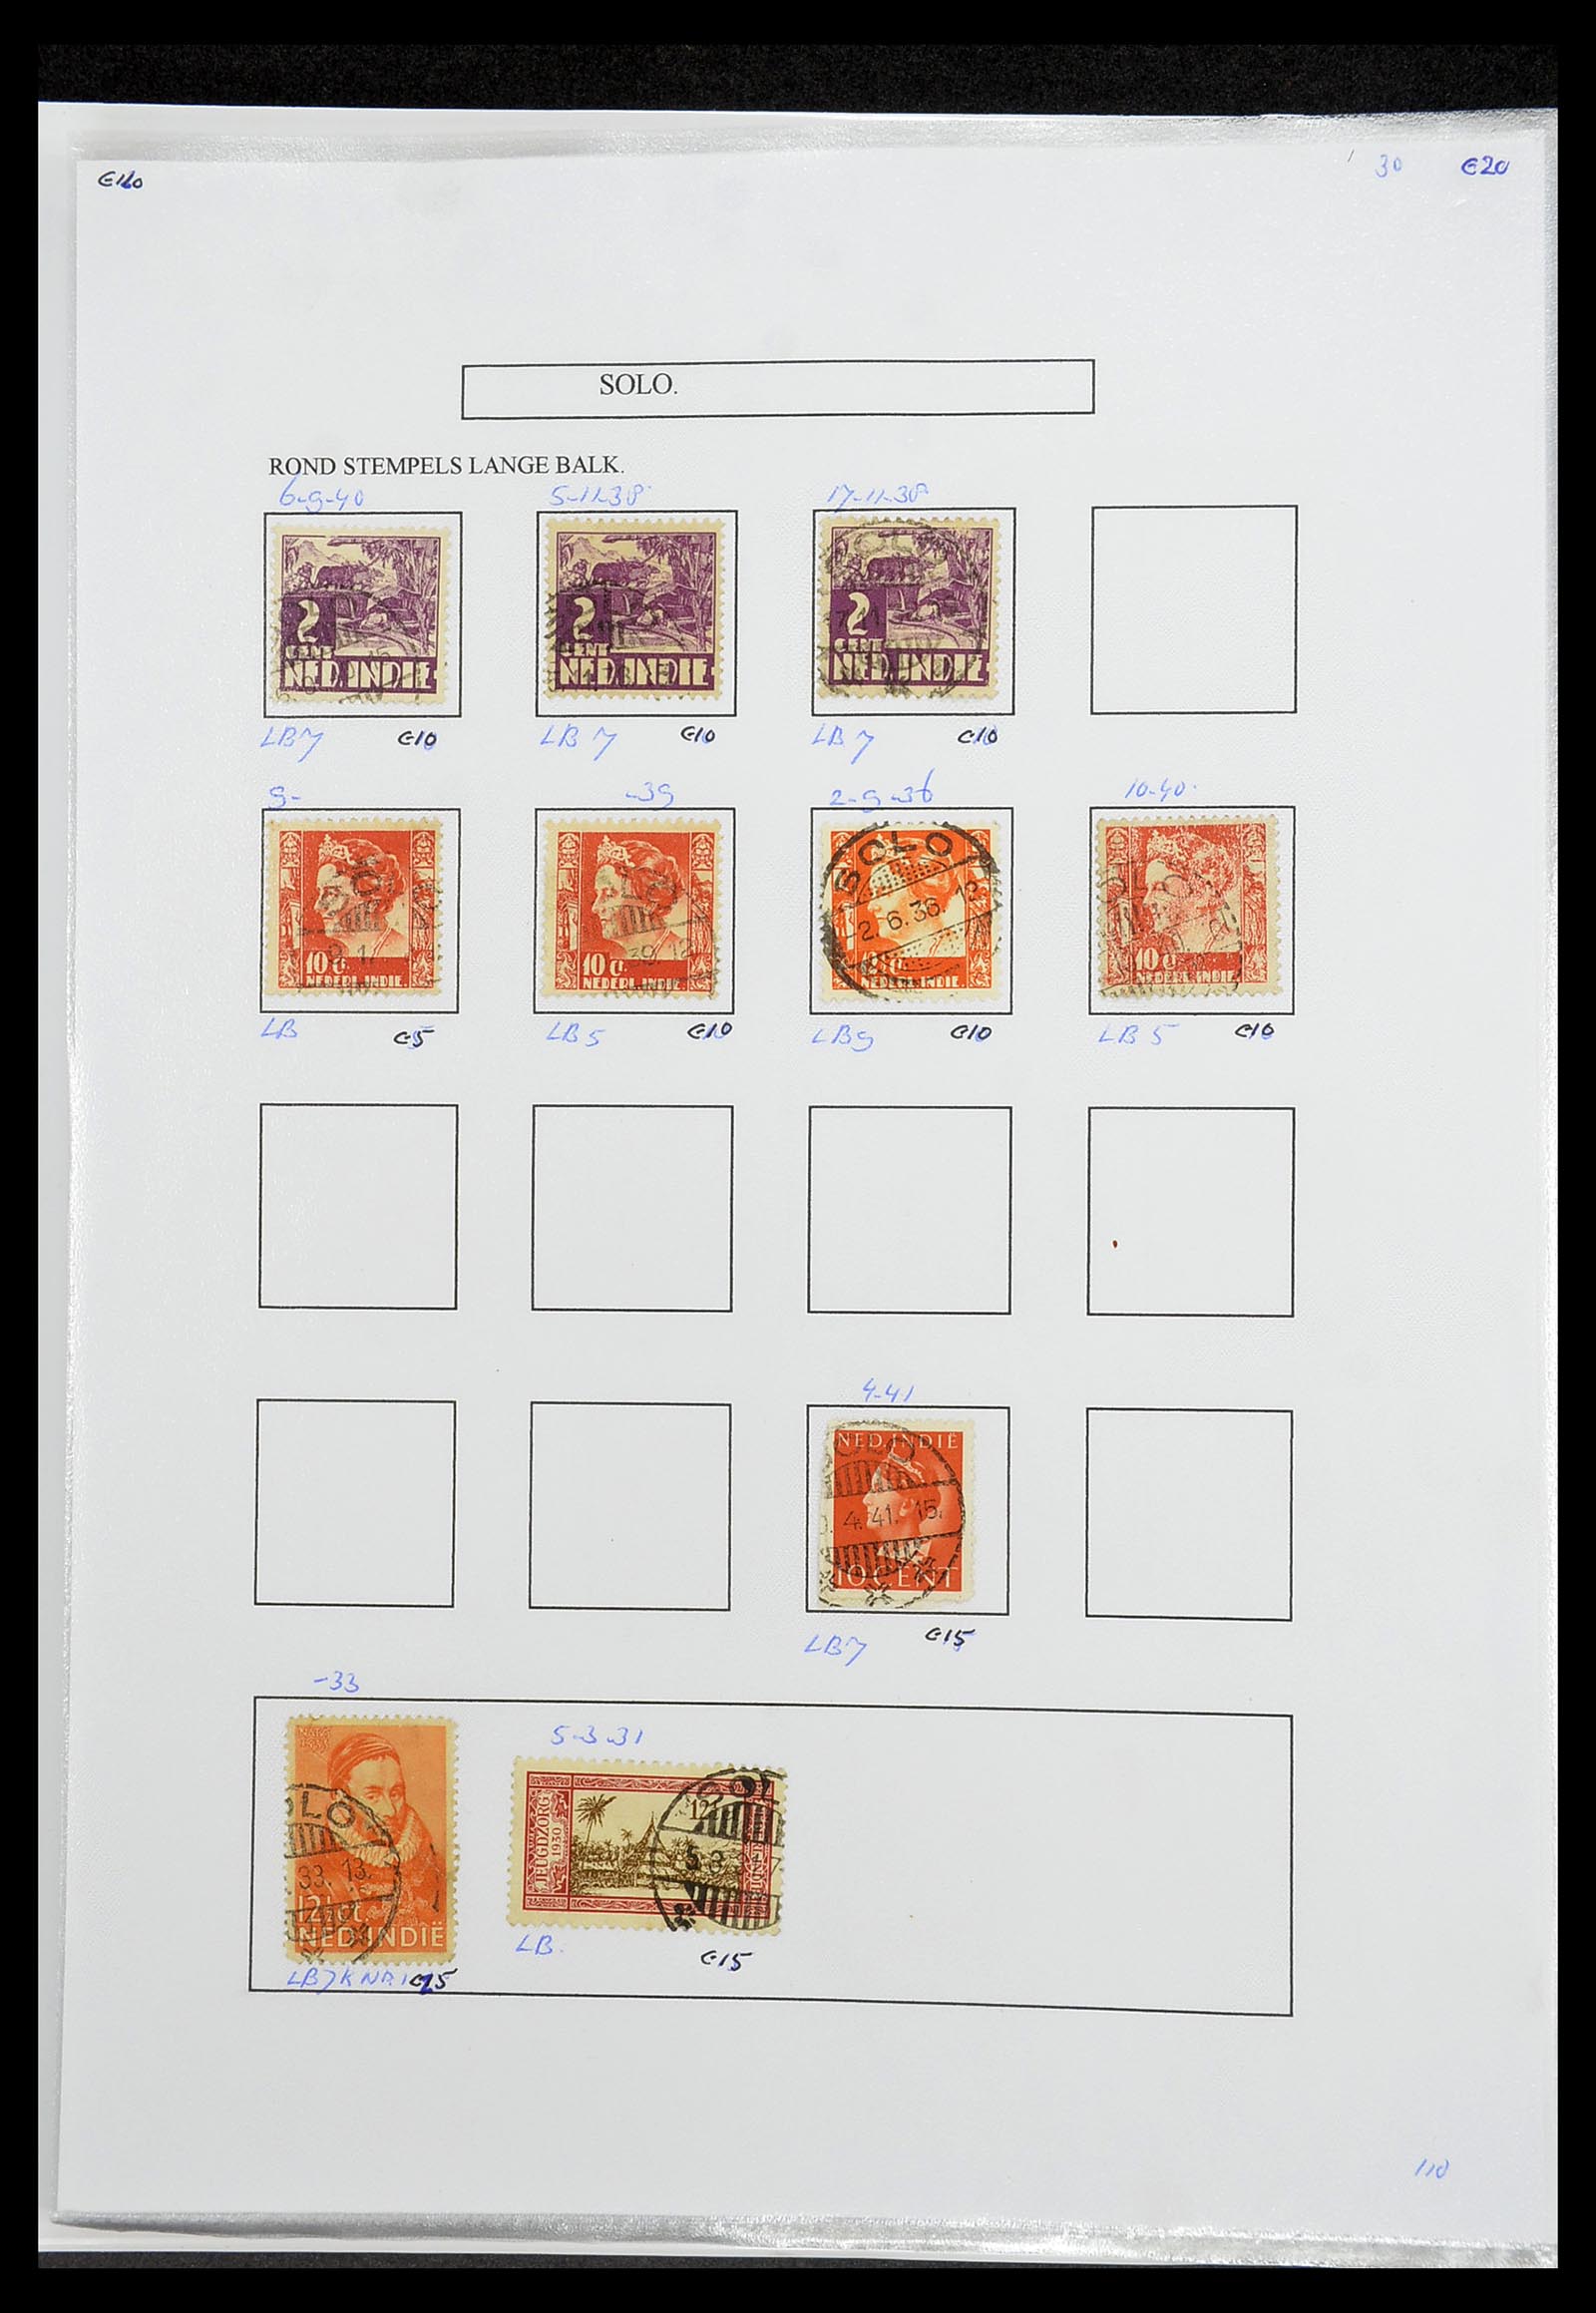 34693 395 - Postzegelverzameling 34693 Nederlands Indië stempels 1917-1948.